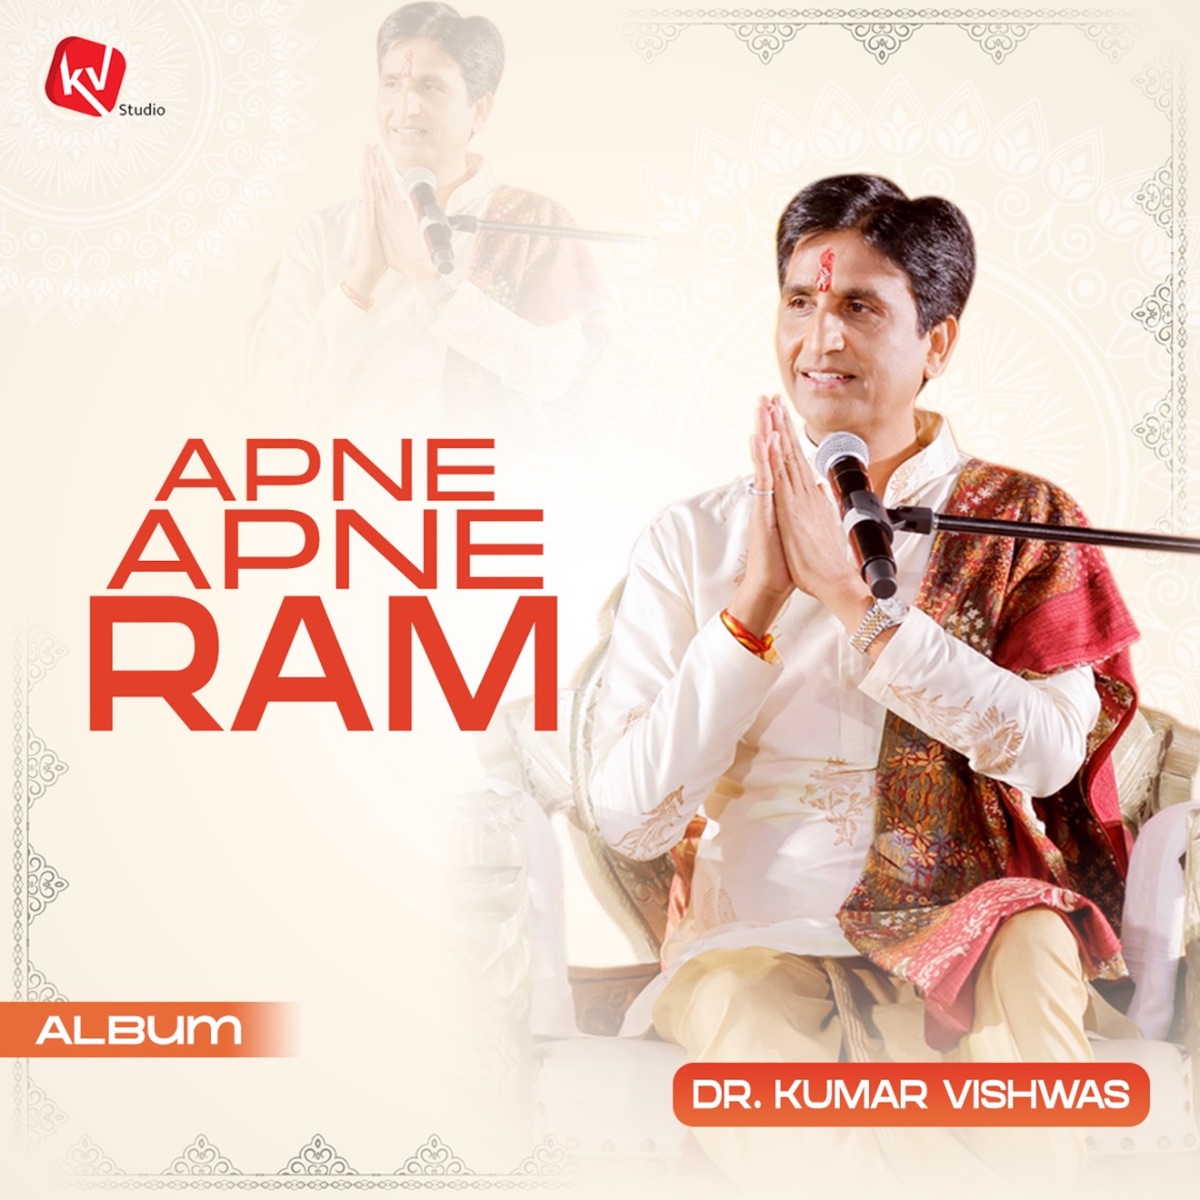 Ram Raja Bhi Hain Aur - Single - Album by Kumar Vishwas - Apple Music